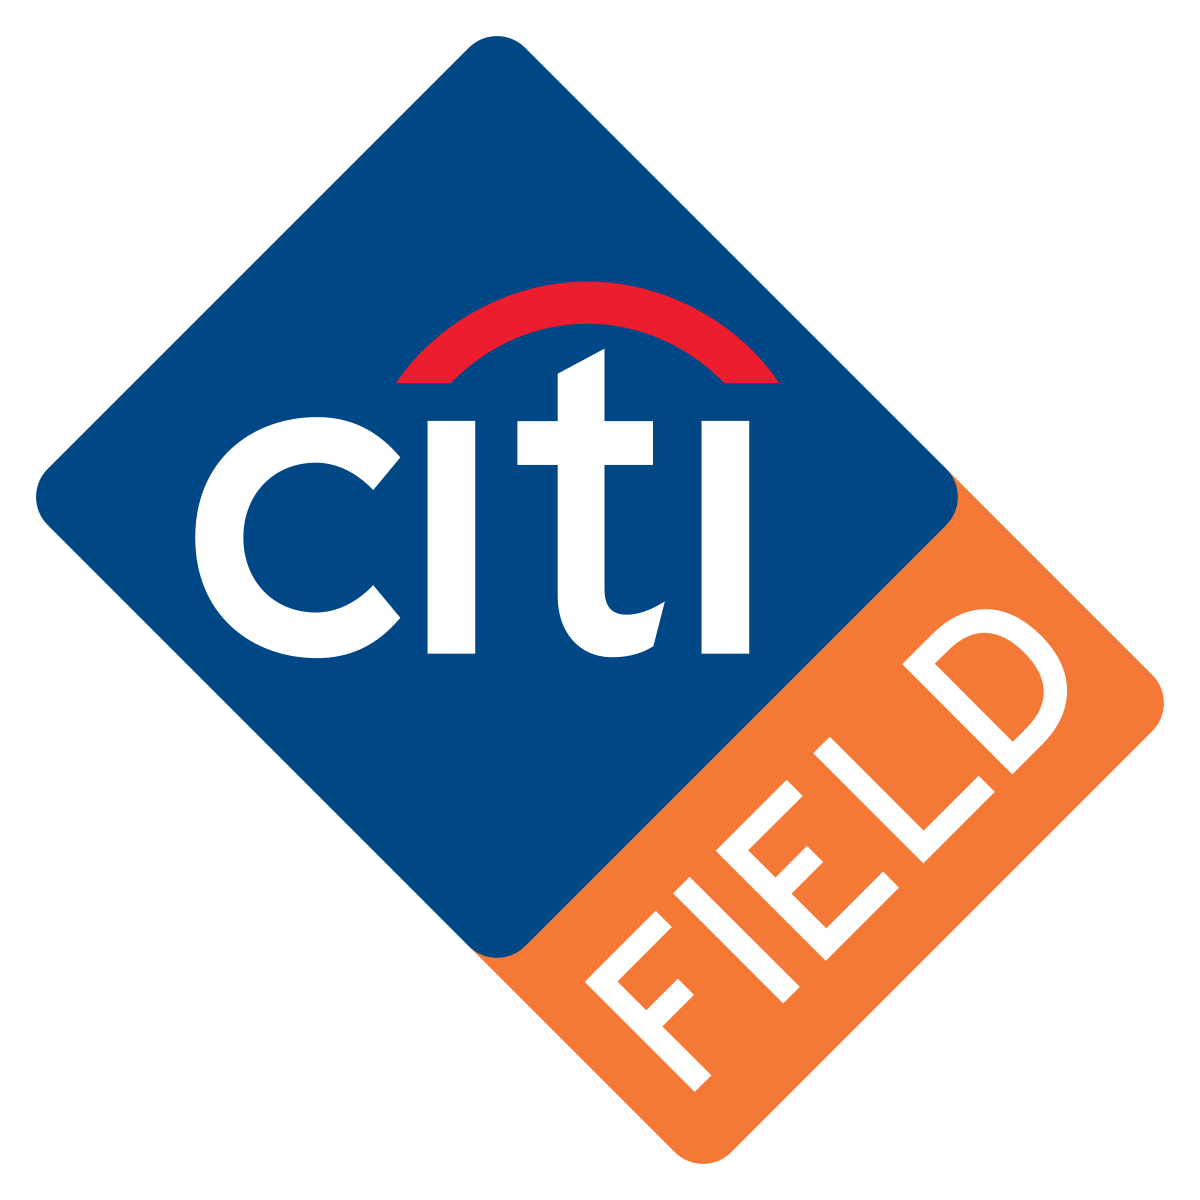 Citi Logo - Citi Field